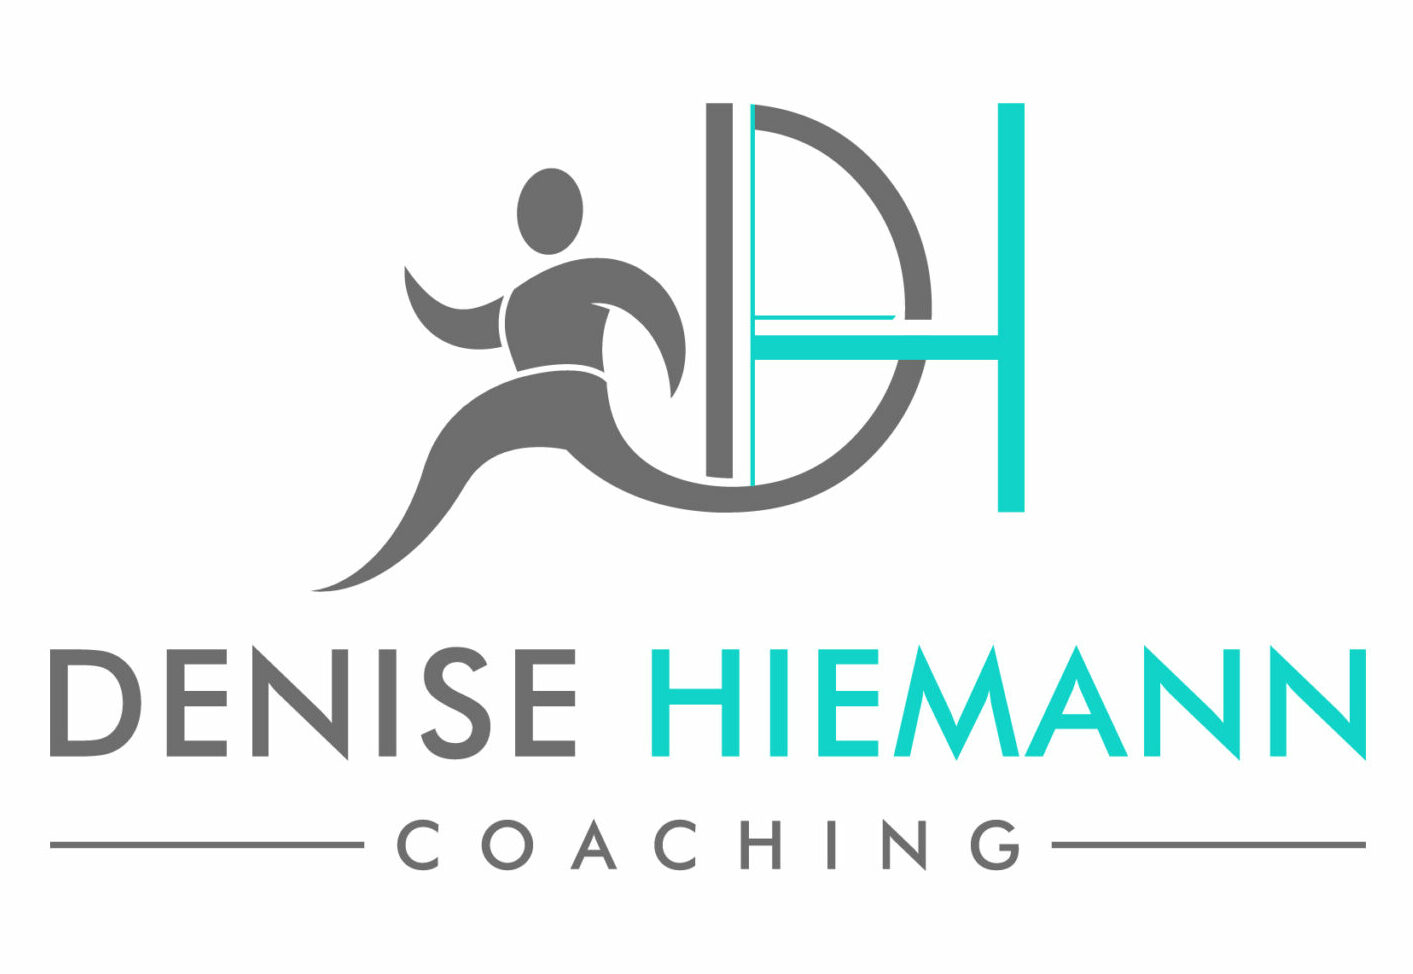 Denise Coaching